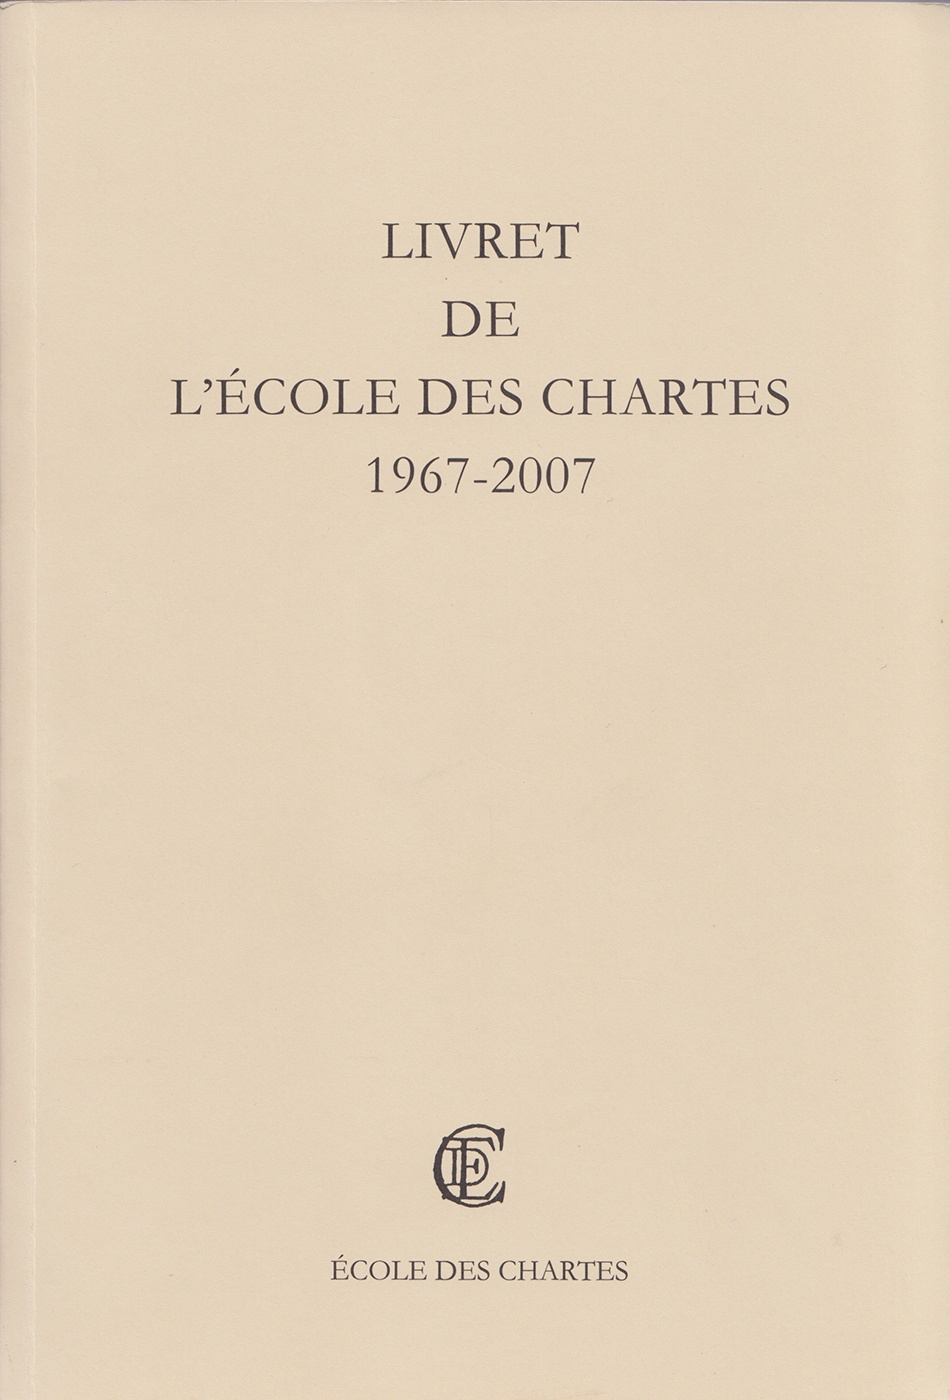 Livret de l'École des chartes 1967-2007